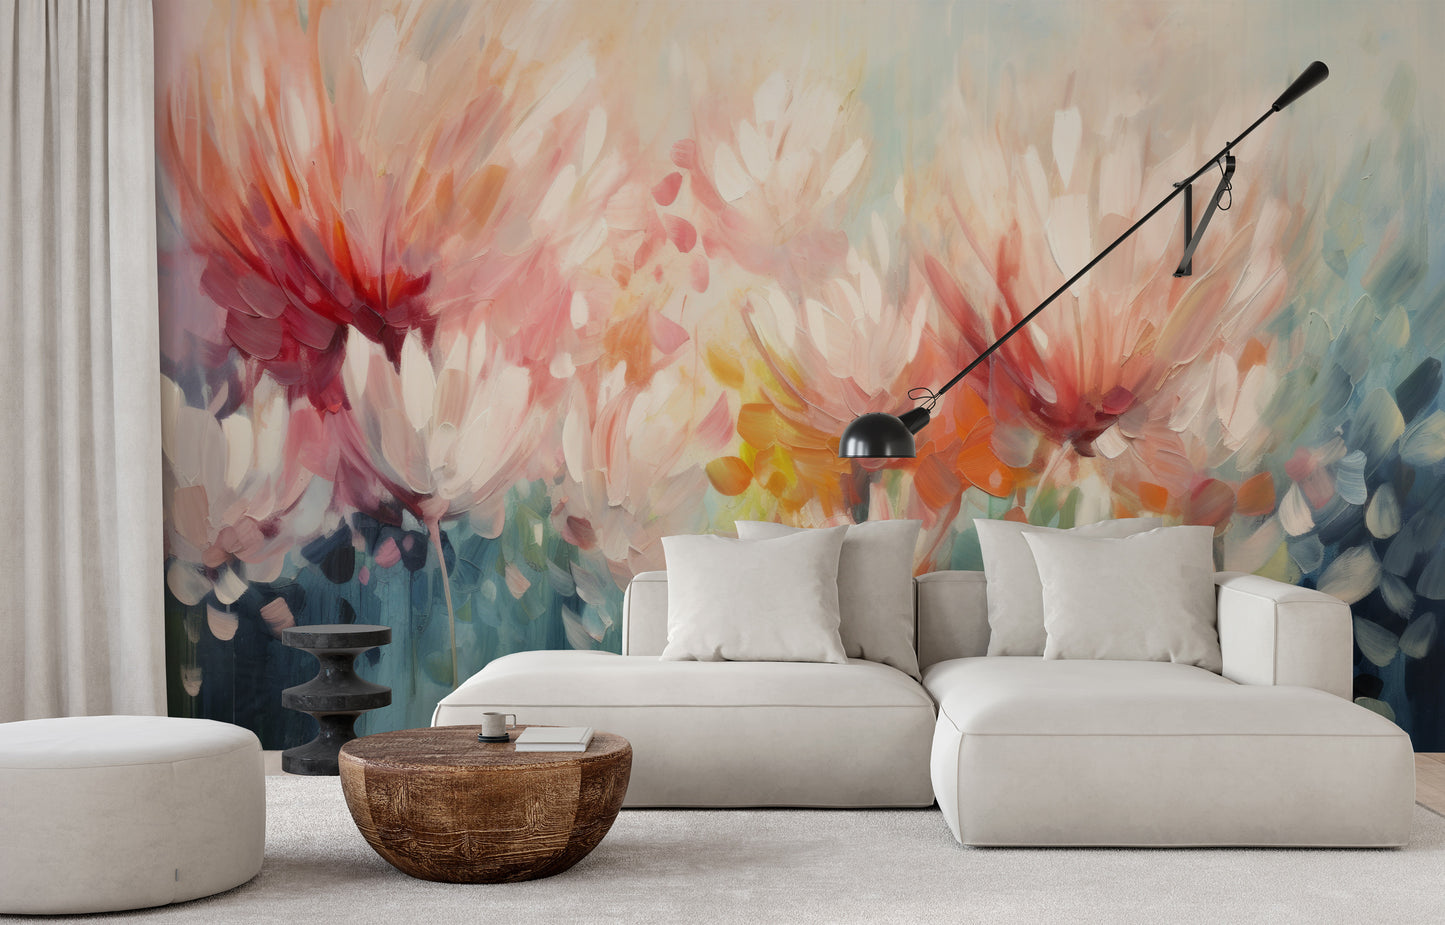 Fototapeta malowana o nazwie Floral Burst pokazana w aranżacji wnętrza.